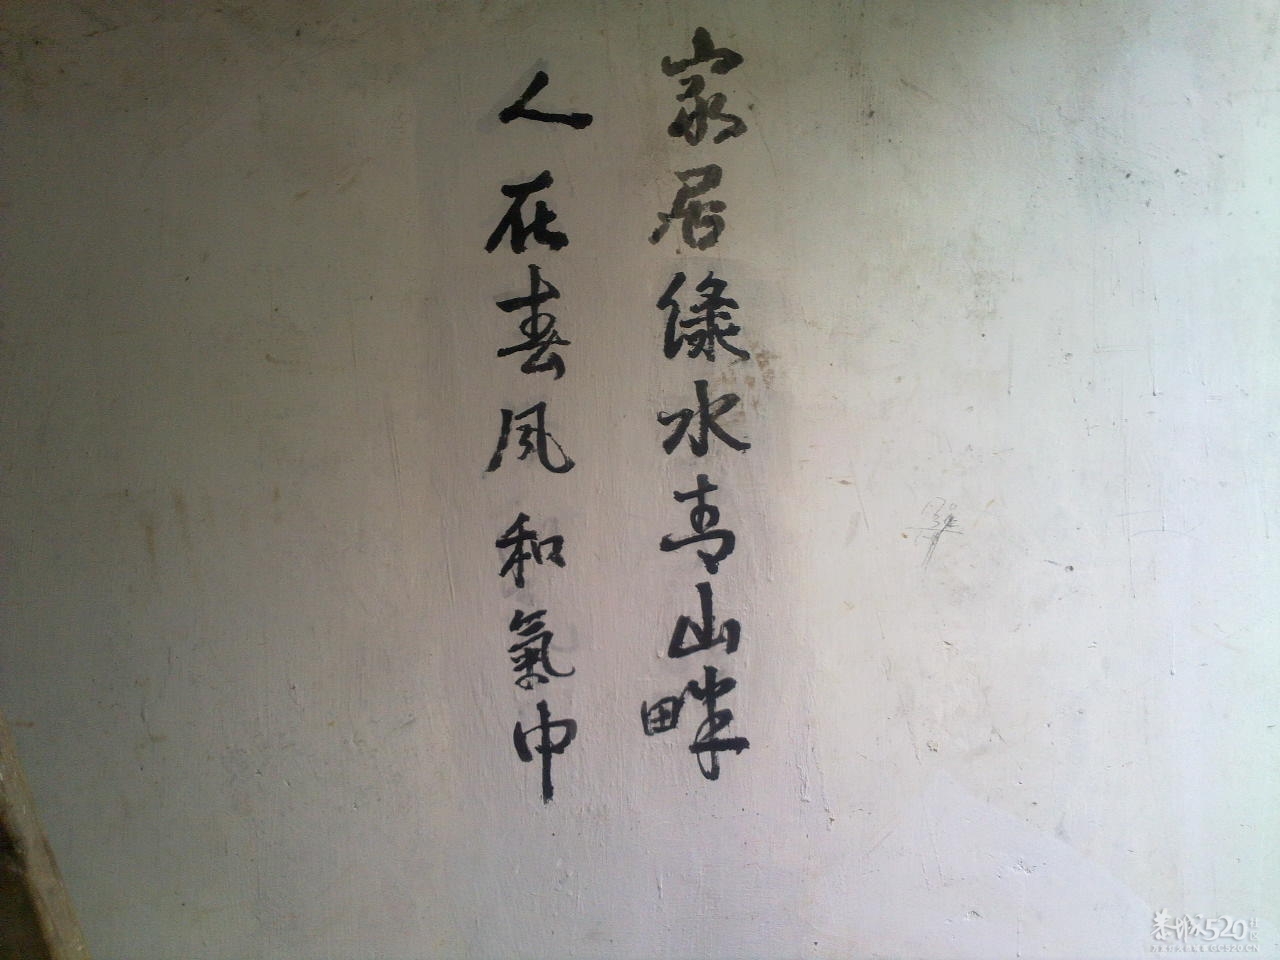 在邓扒村一间民房墙上拍到的诗词981 / 作者:金网 / 帖子ID:11390